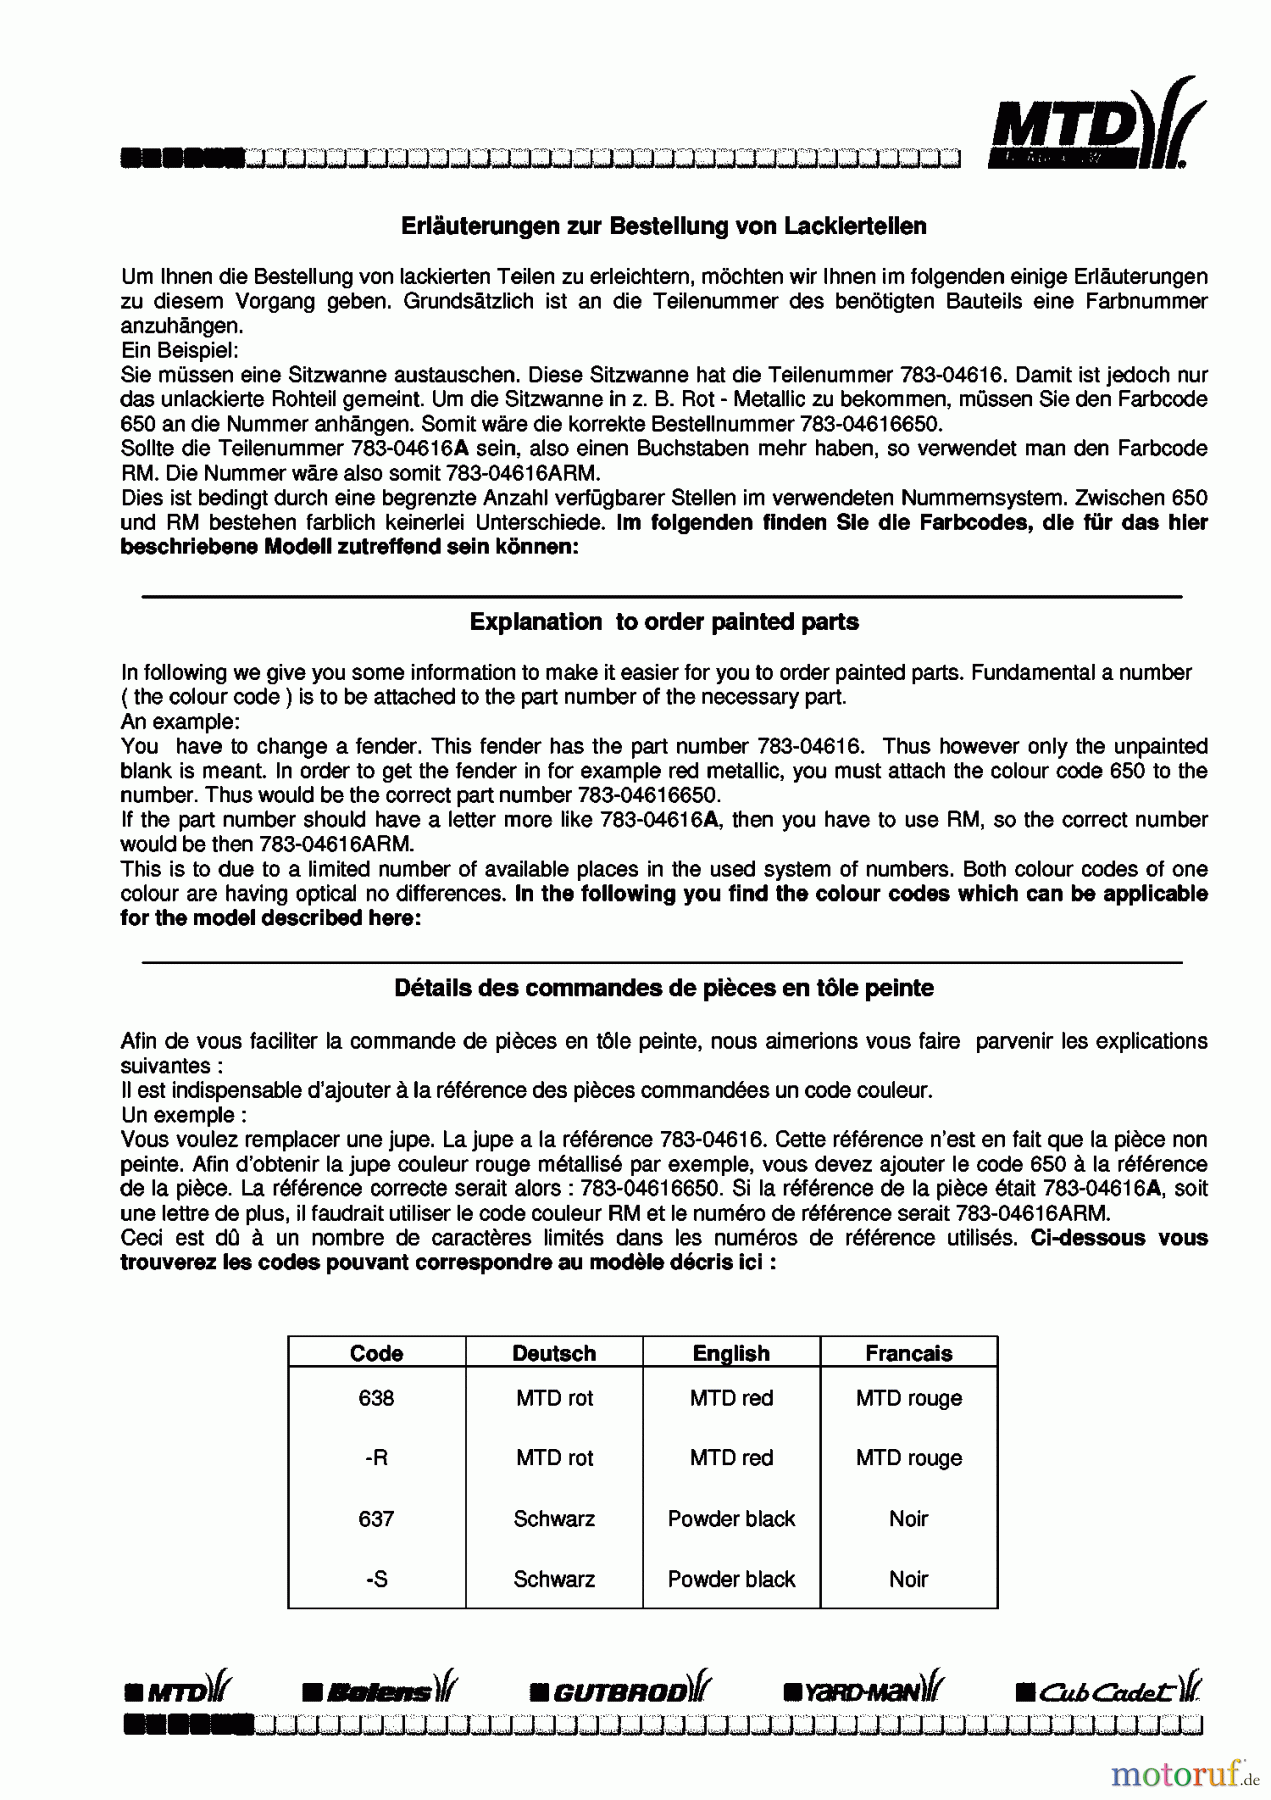  Univert Tracteurs de pelouse UN 125 BF 13BL47GE663  (1998) Information du code de couleur